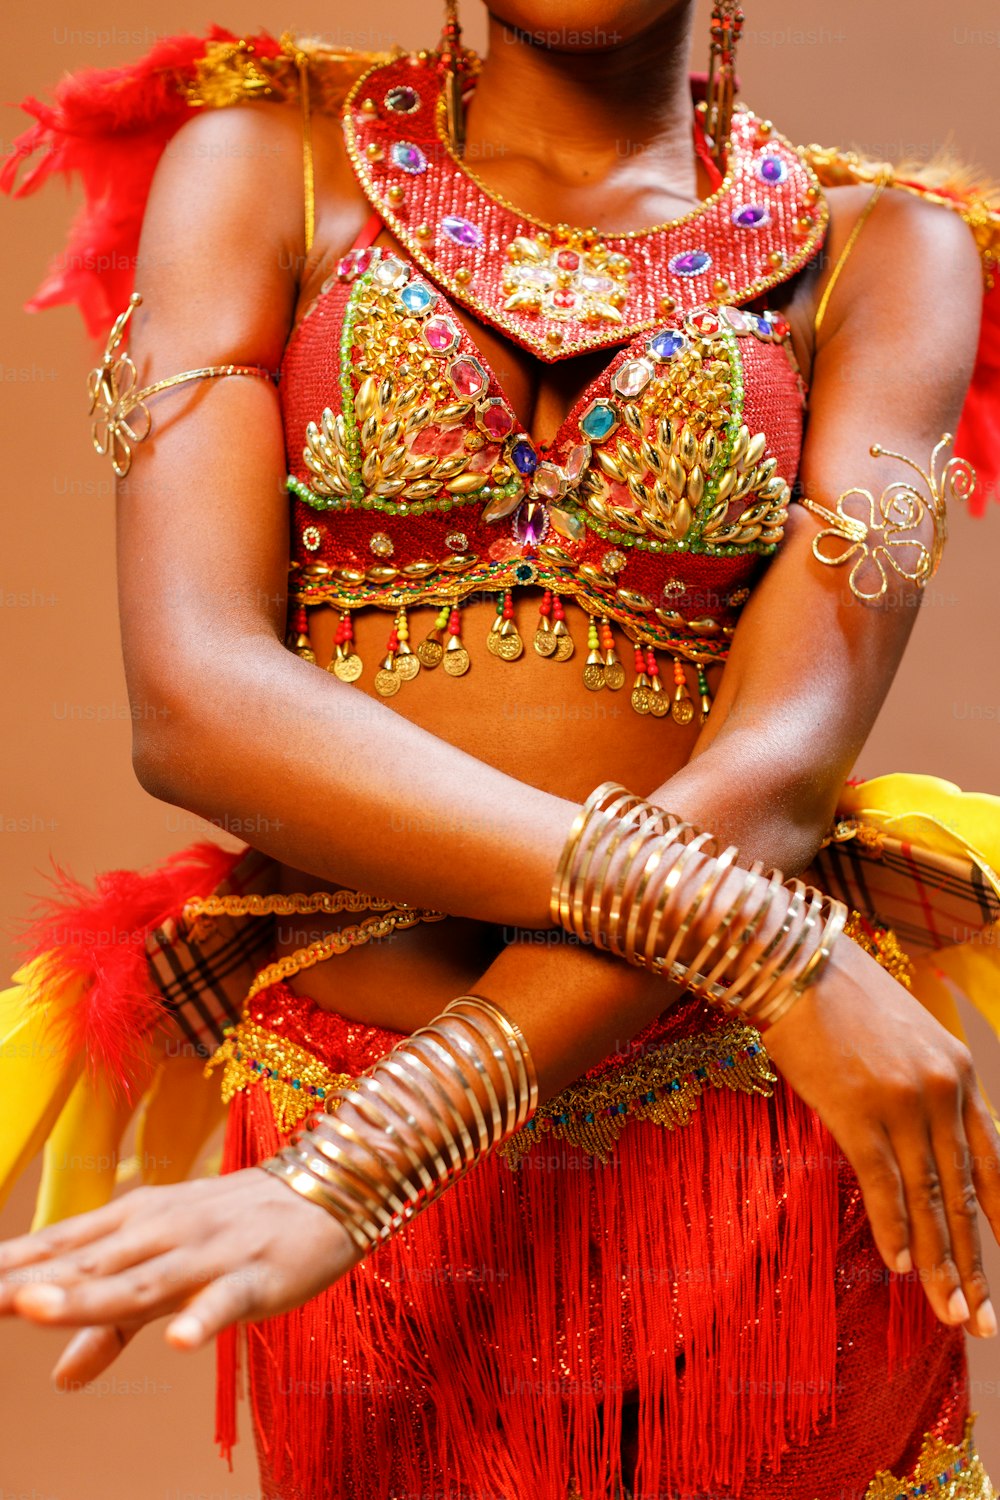 Imágenes de Disfraz De Carnaval  Descarga imágenes gratuitas en Unsplash